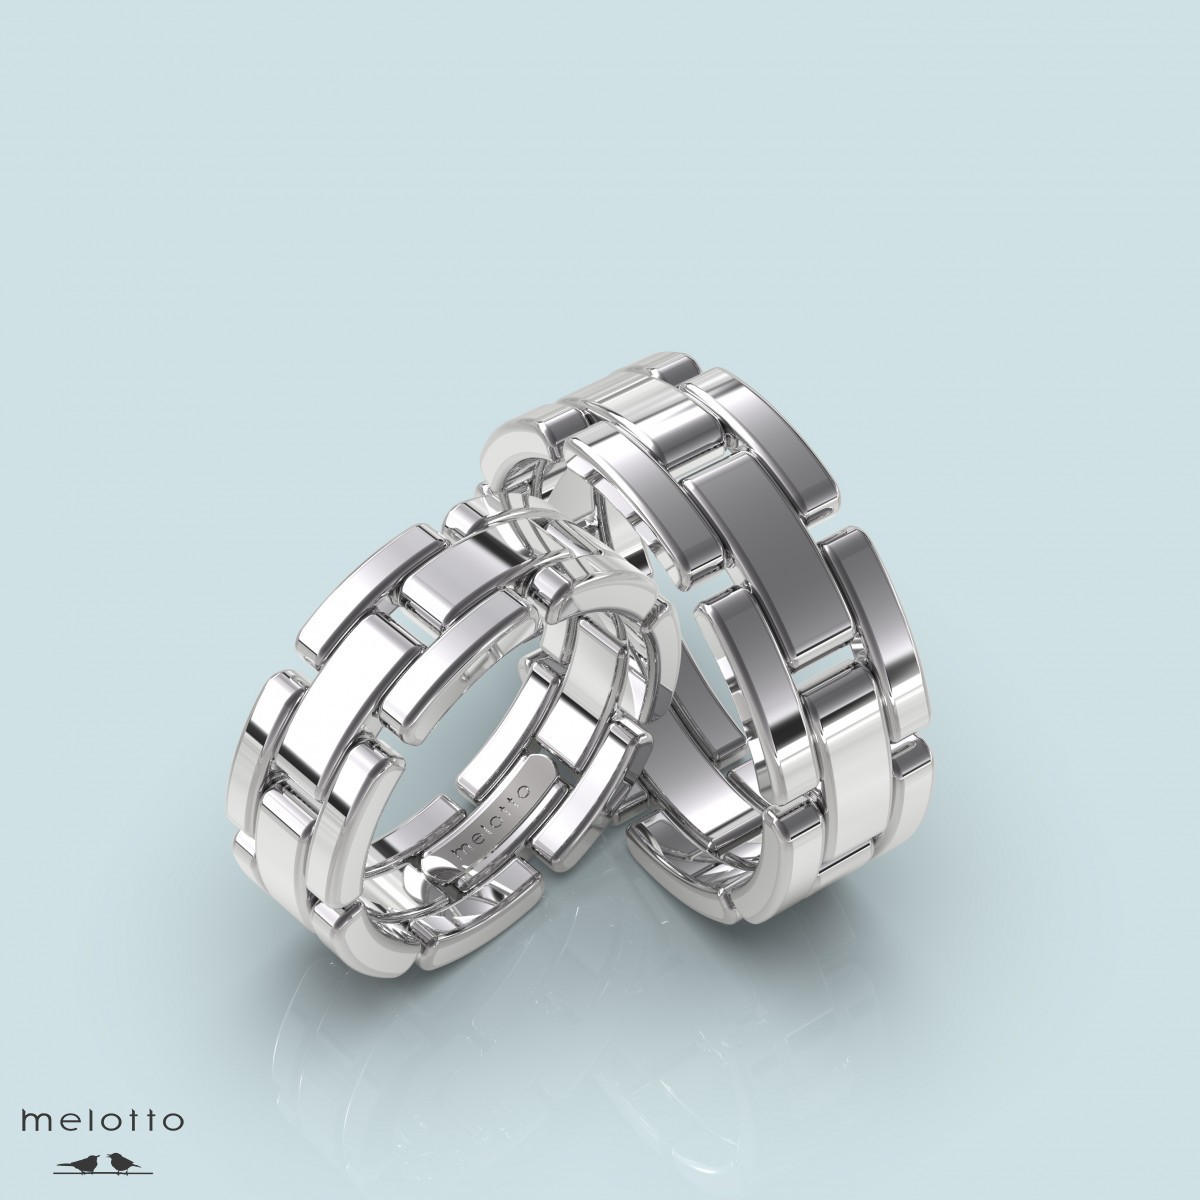 Обручальные кольца браслетного дизайна